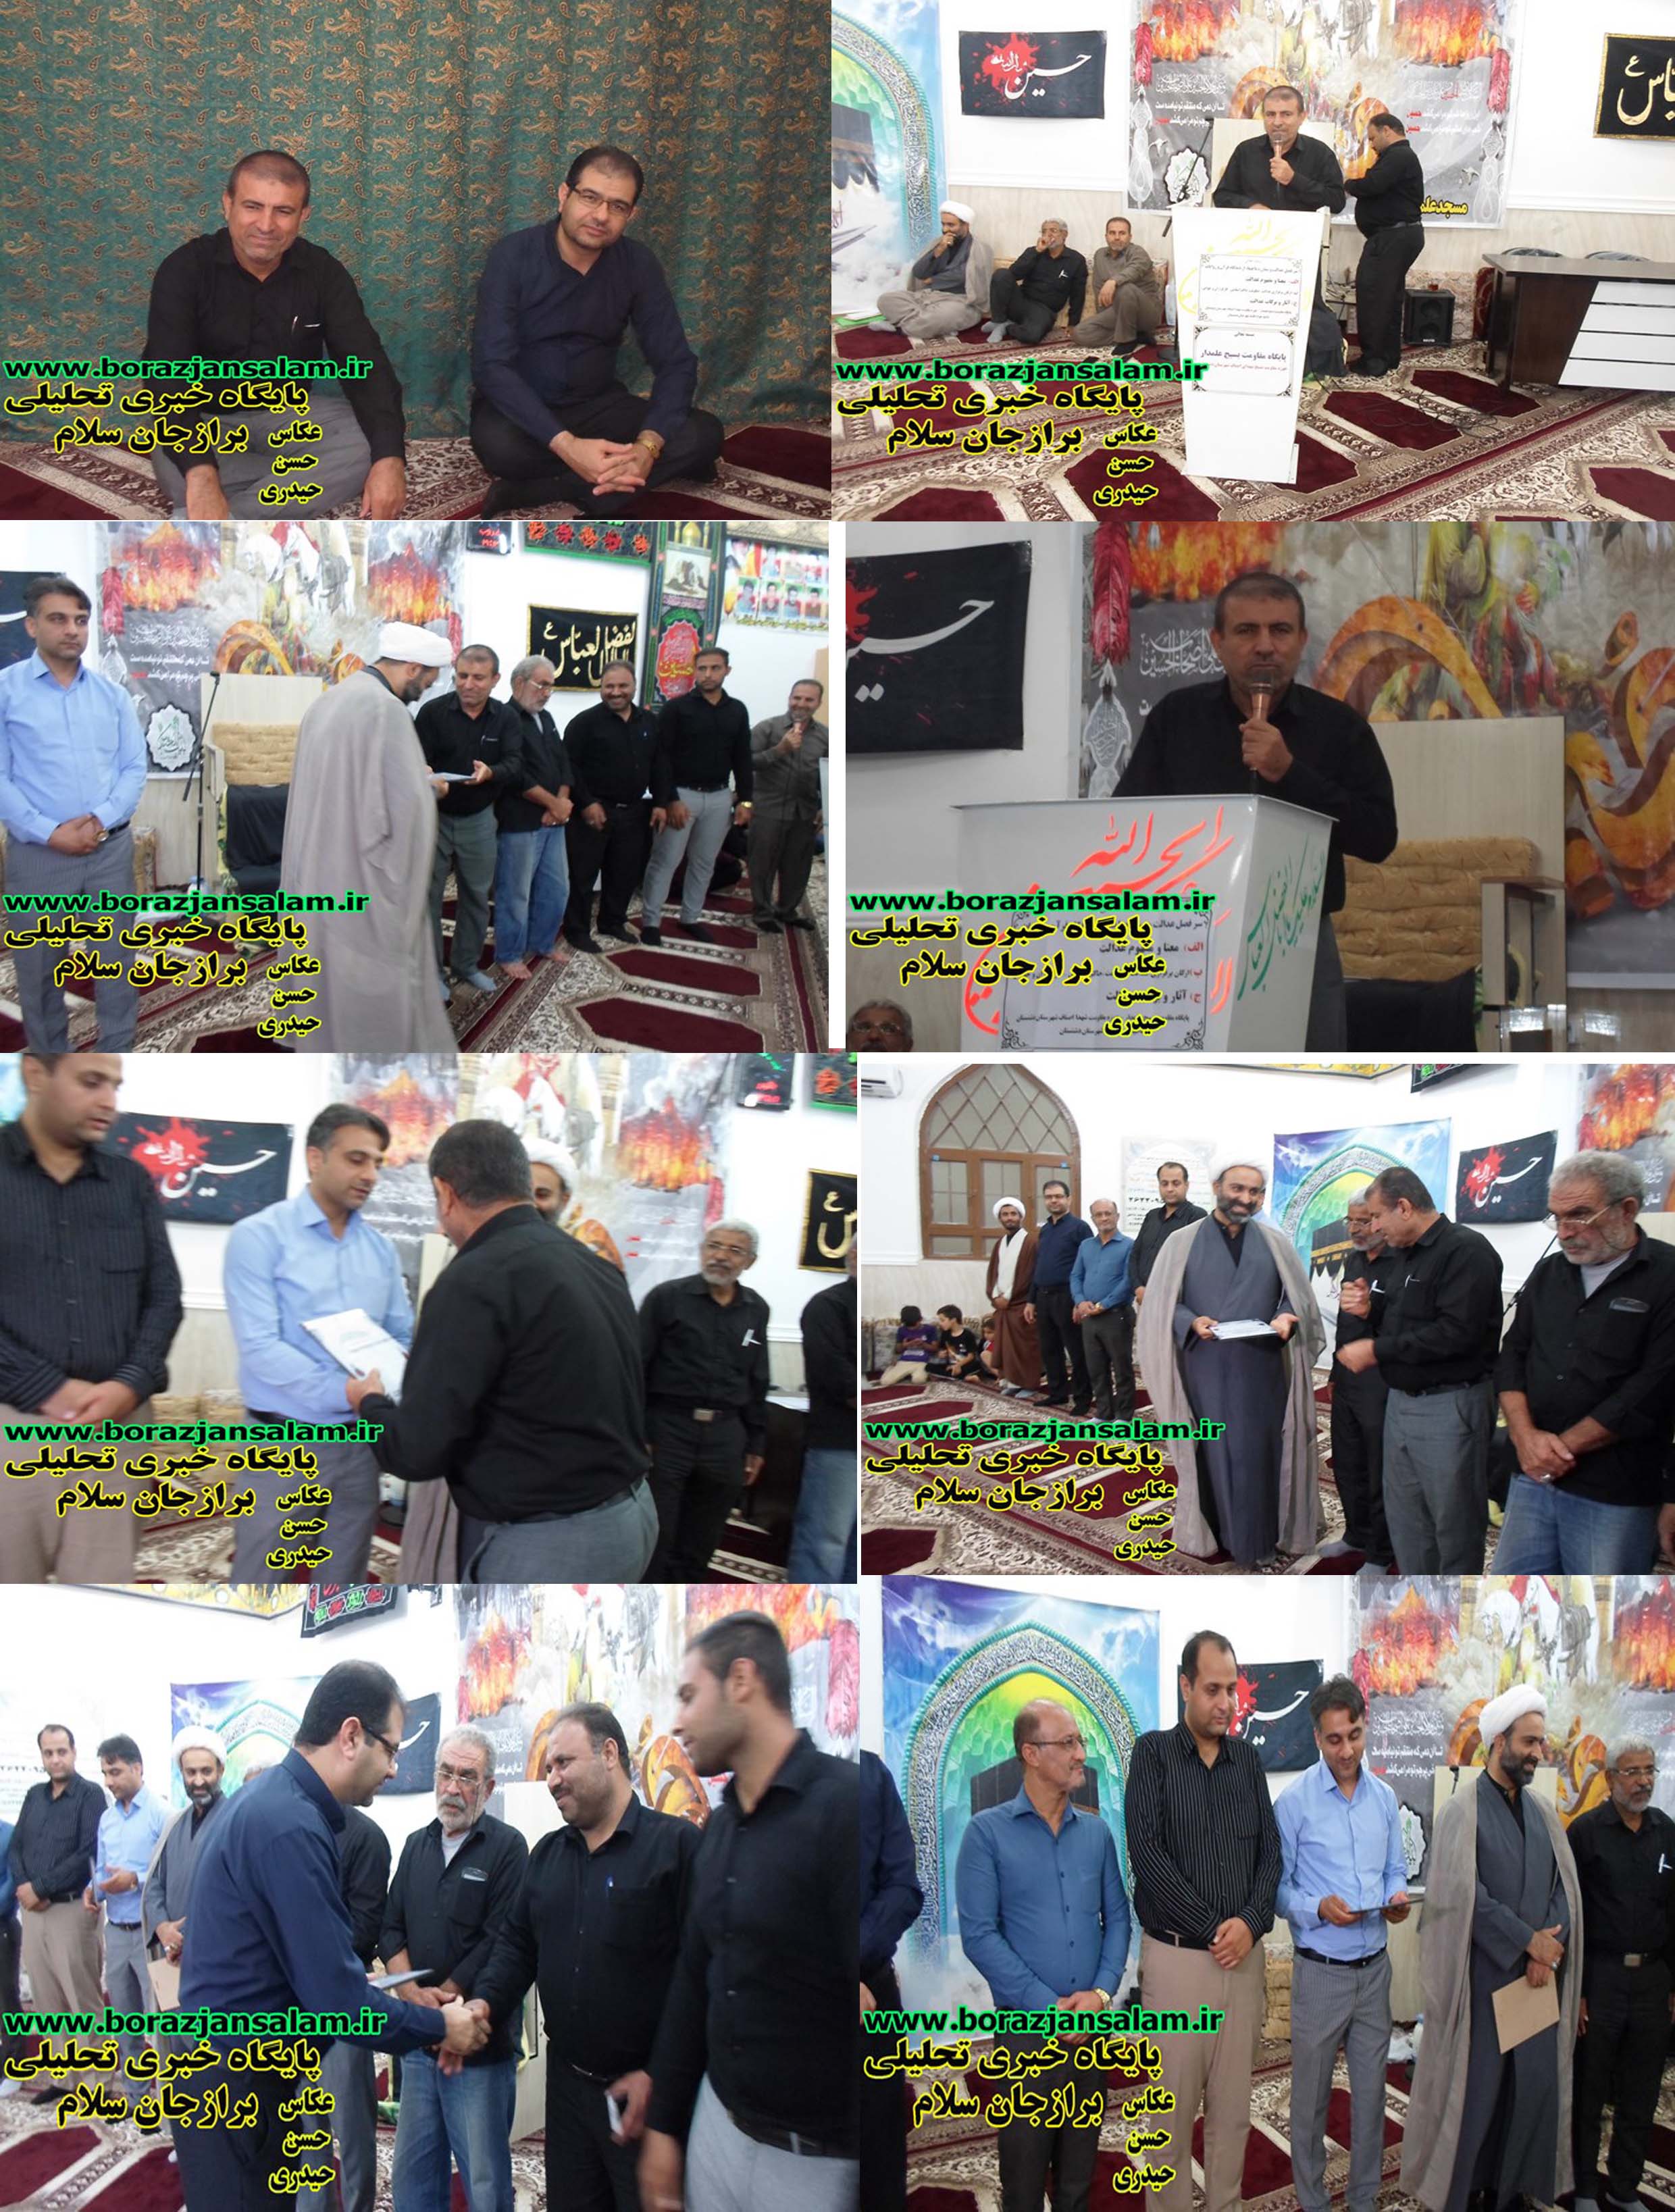 سخنرانی محراب بنافی ریس شورای اسلامی شهر برازجان در مسجد علمدار و تقدیر از مسولین در این مسجد